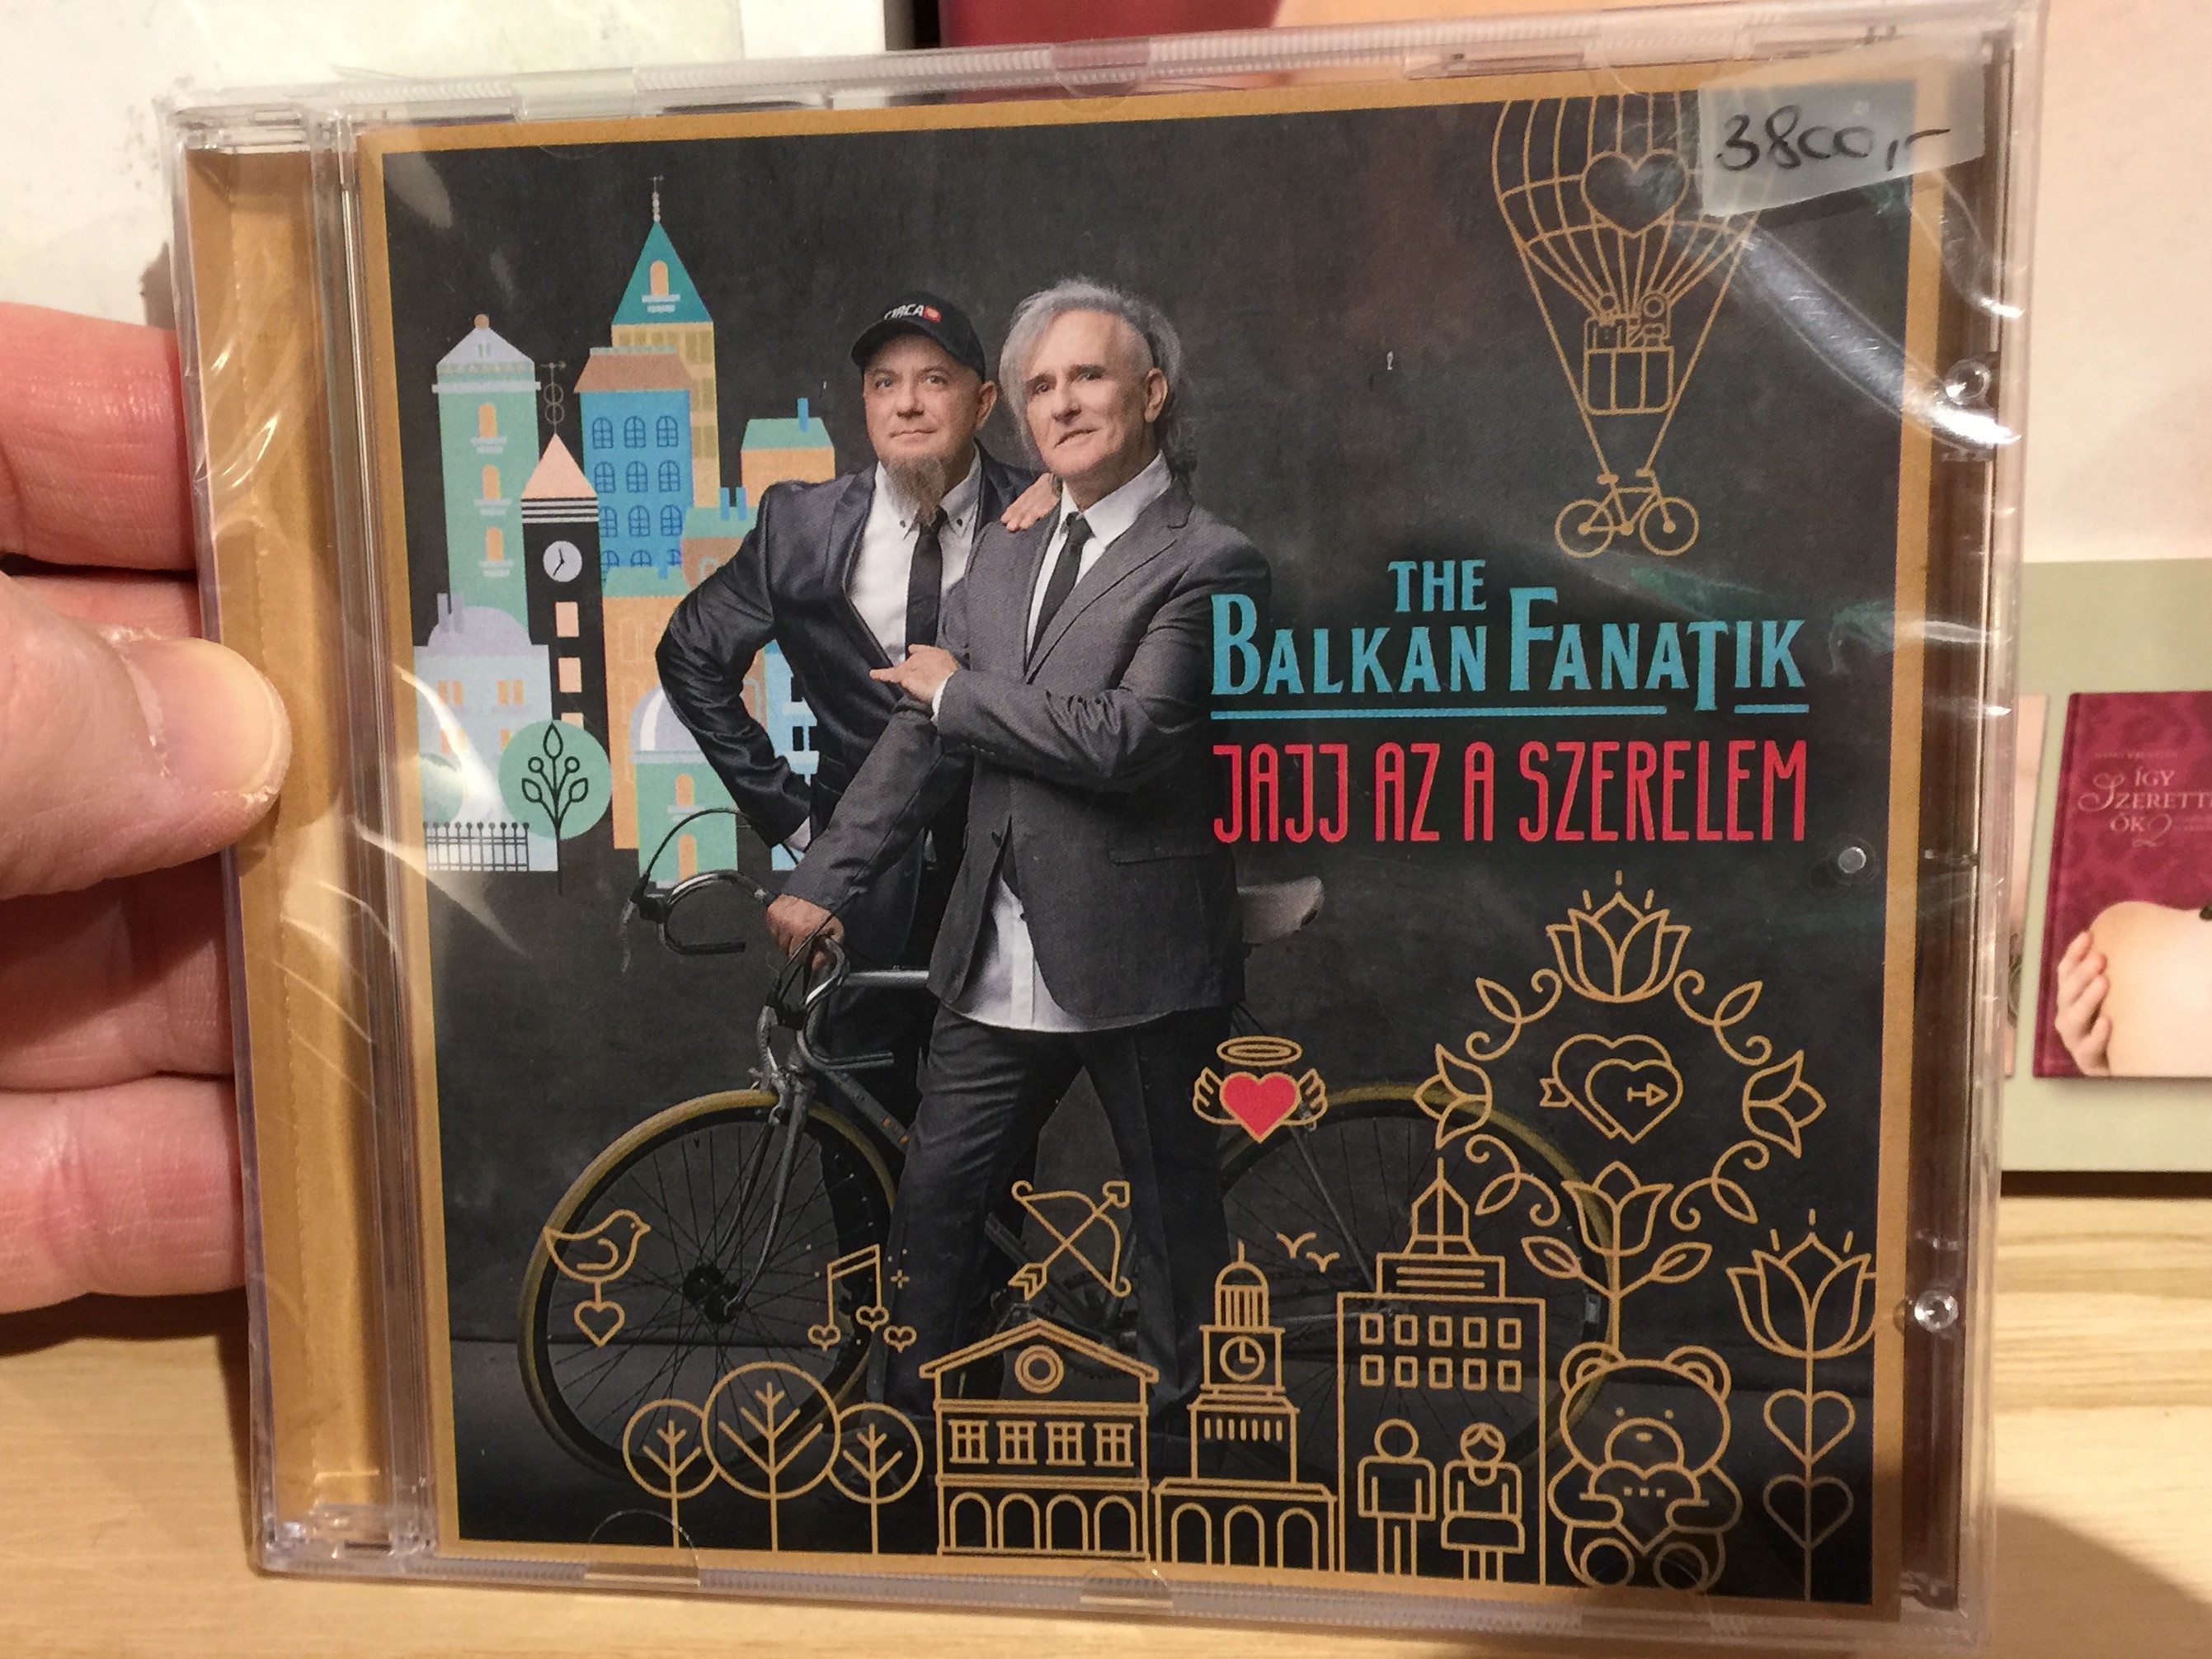 the-balkan-fanatik-jajj-az-a-szerelem-fanatik-production-audiio-cd-2017-5998856550051-1-.jpg